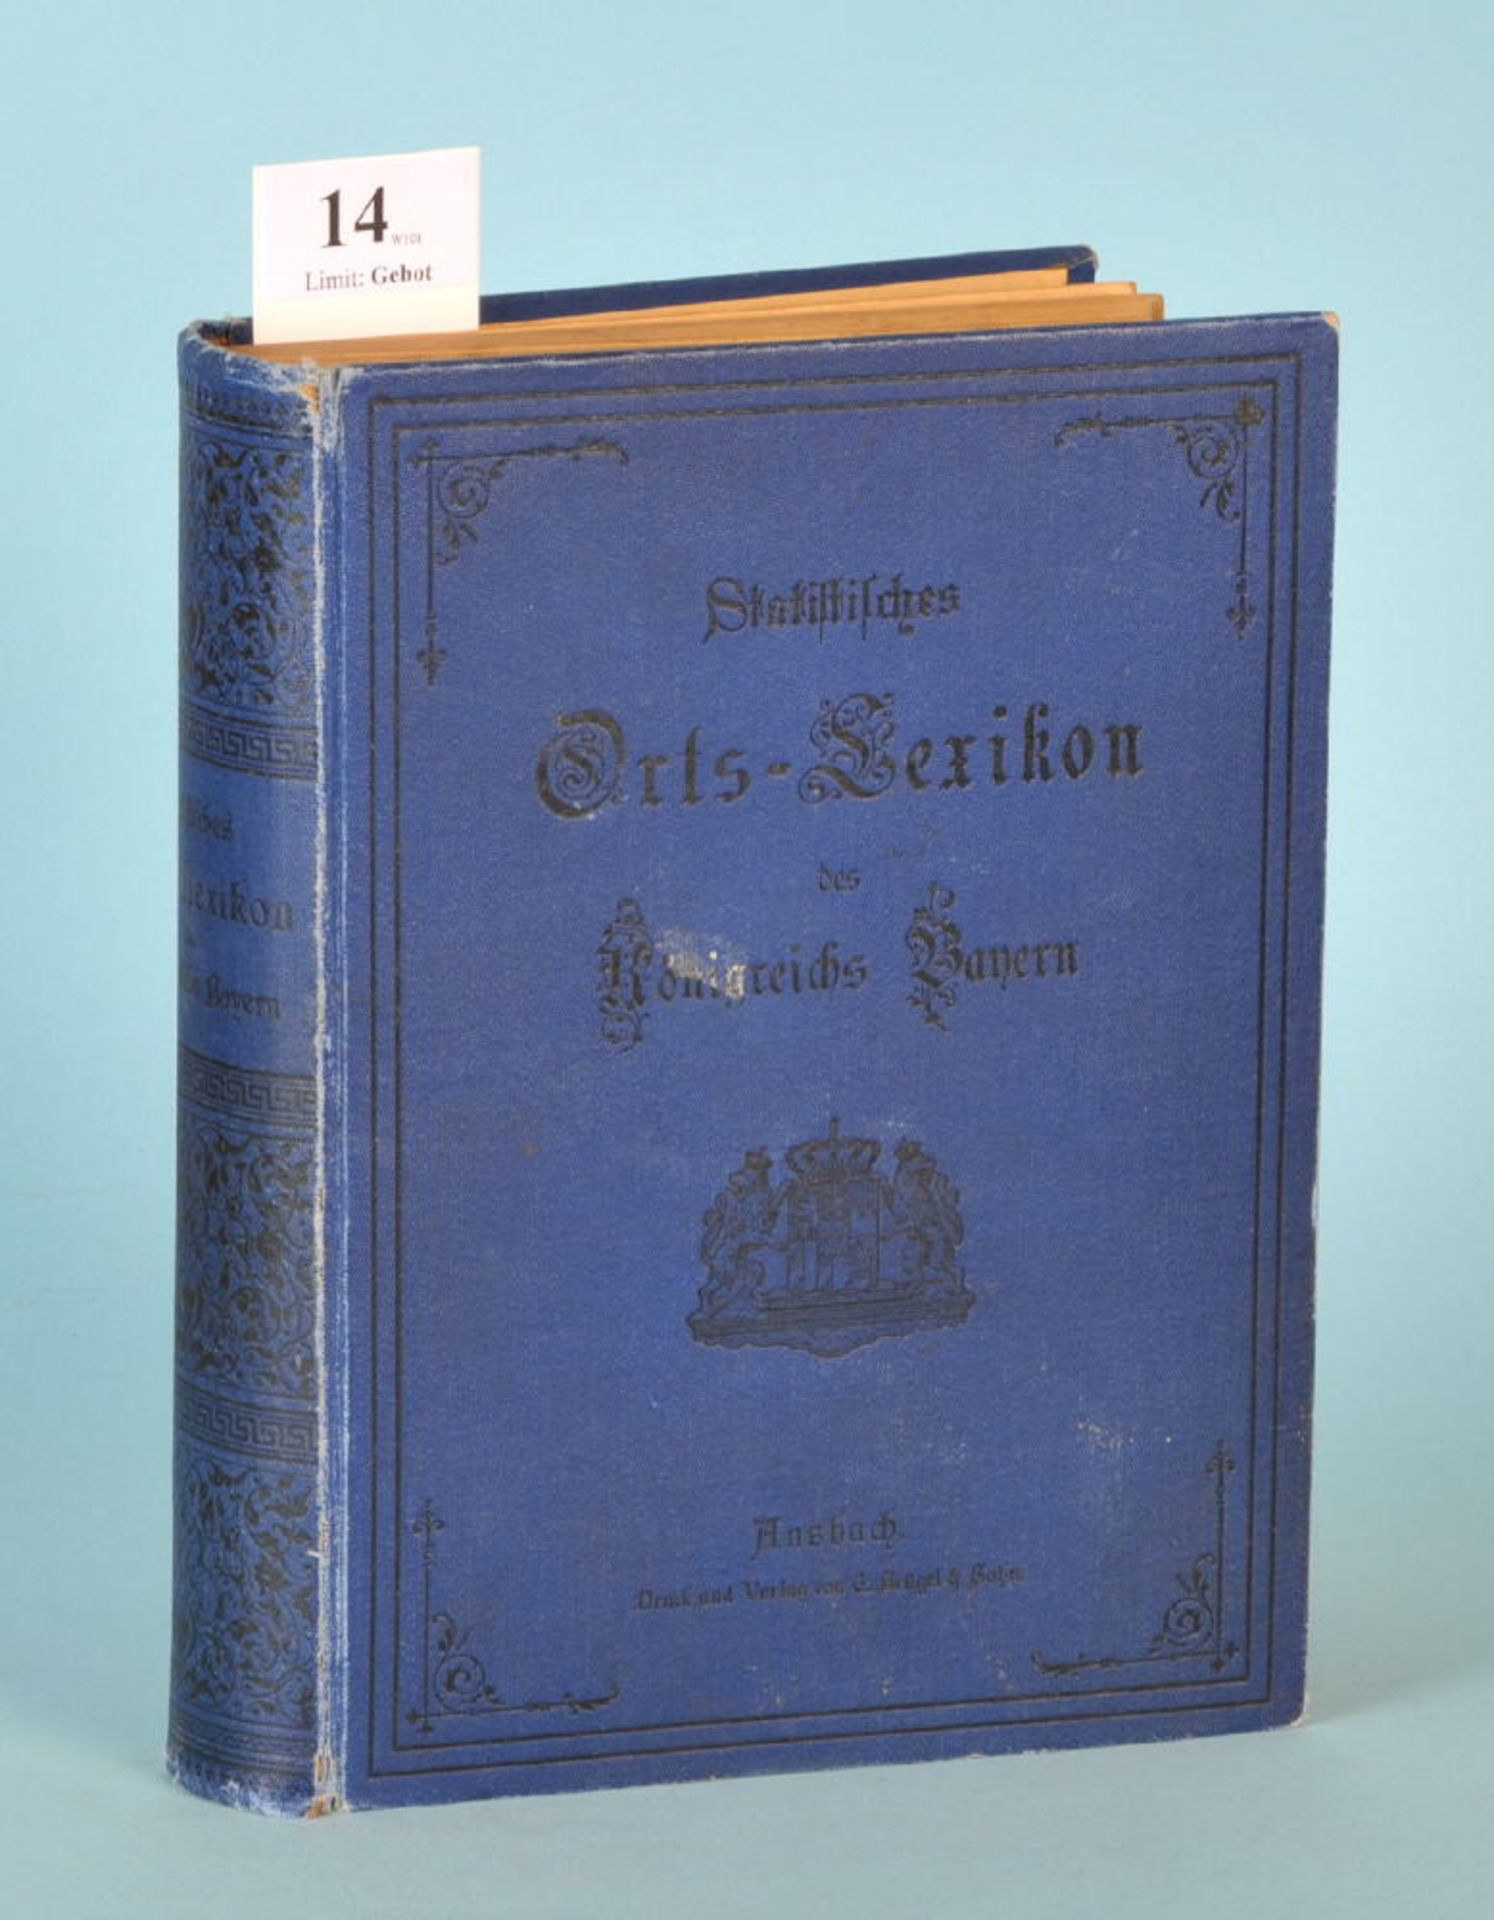 Grübel, B. "Statistisches Orts-Lexikon des Königreichs Bayern"830 S., Vlg. C. Brügel, Ansbach, 1896,